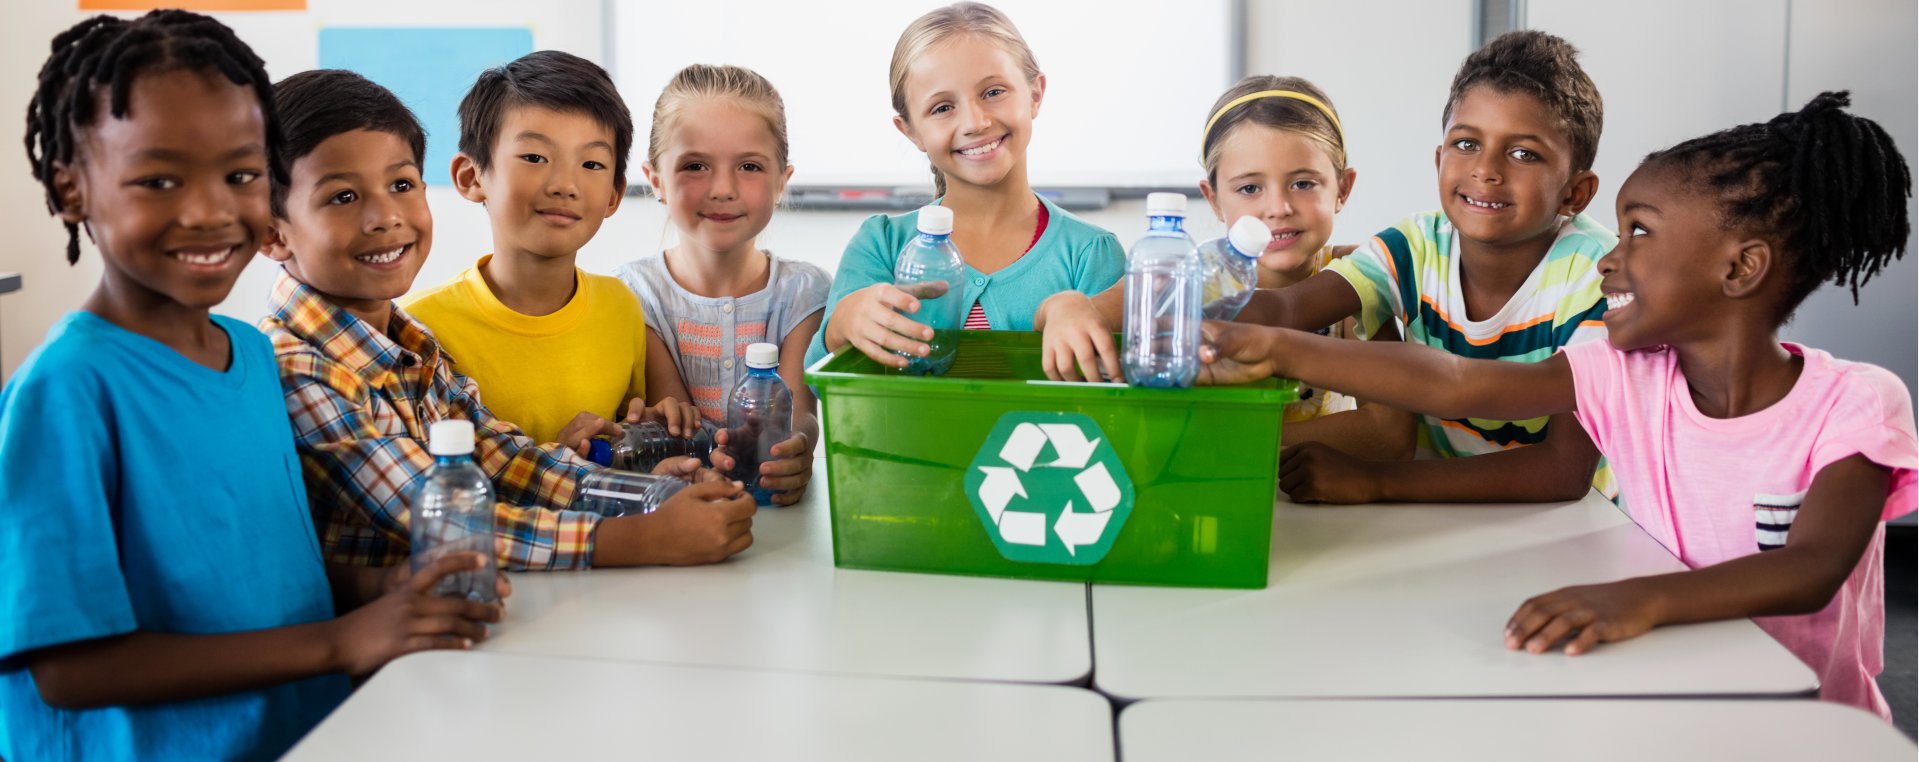 crianças reciclando na escola